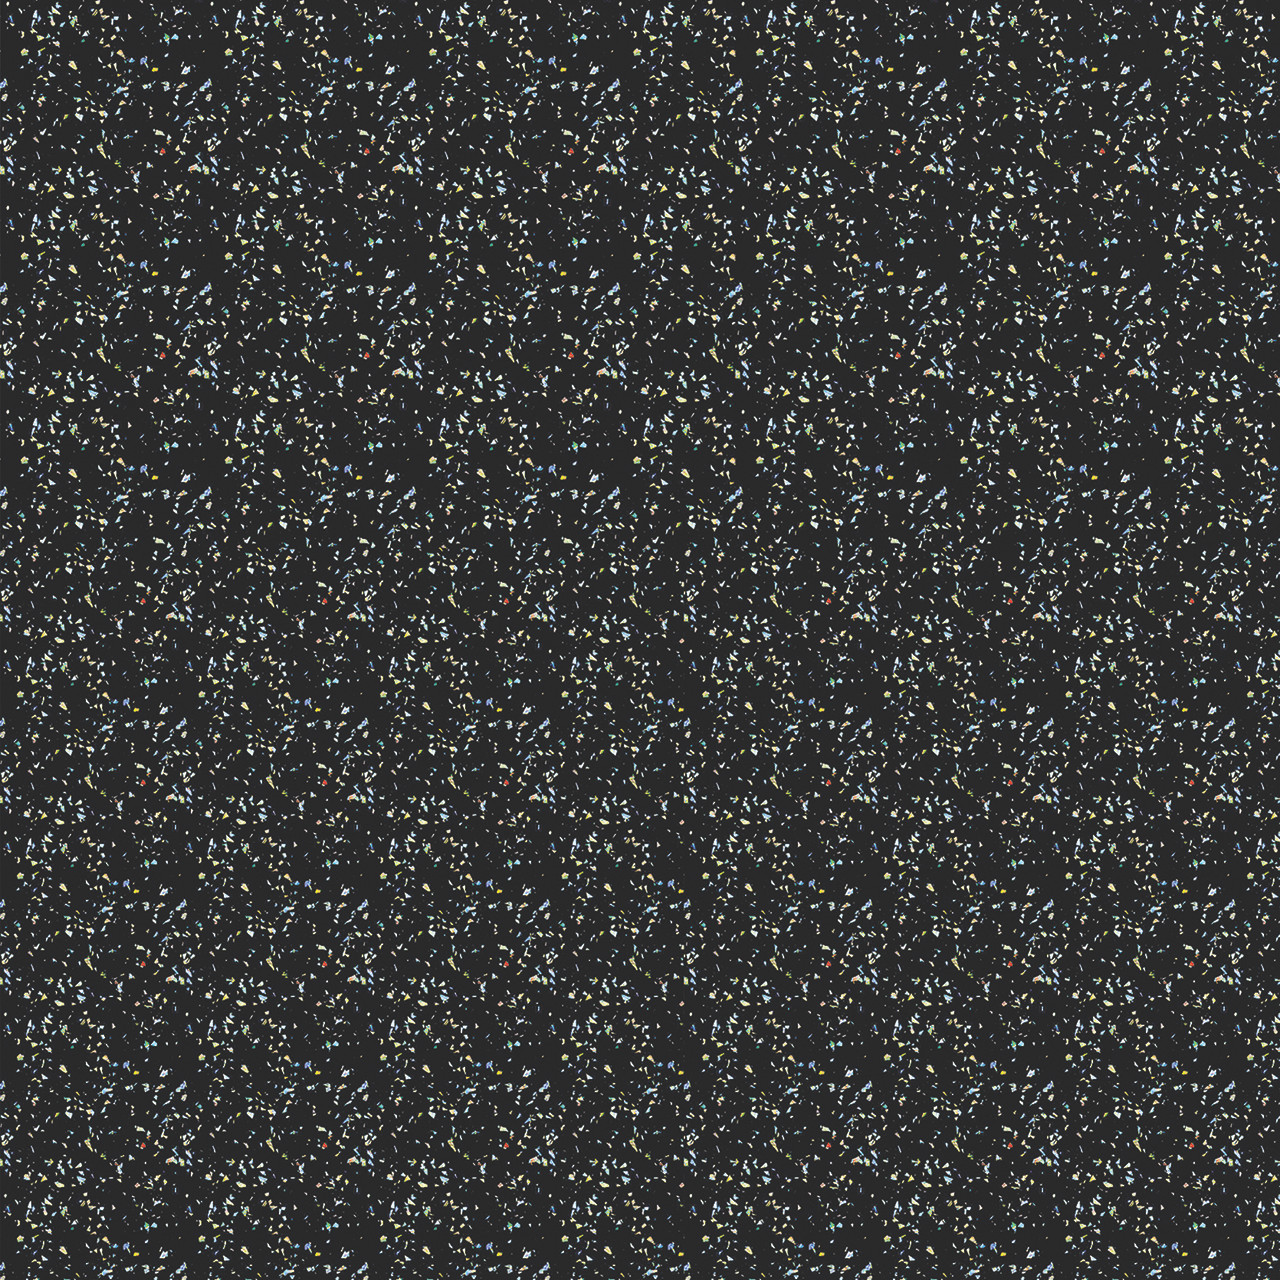 black glitter backgrounds tumblr